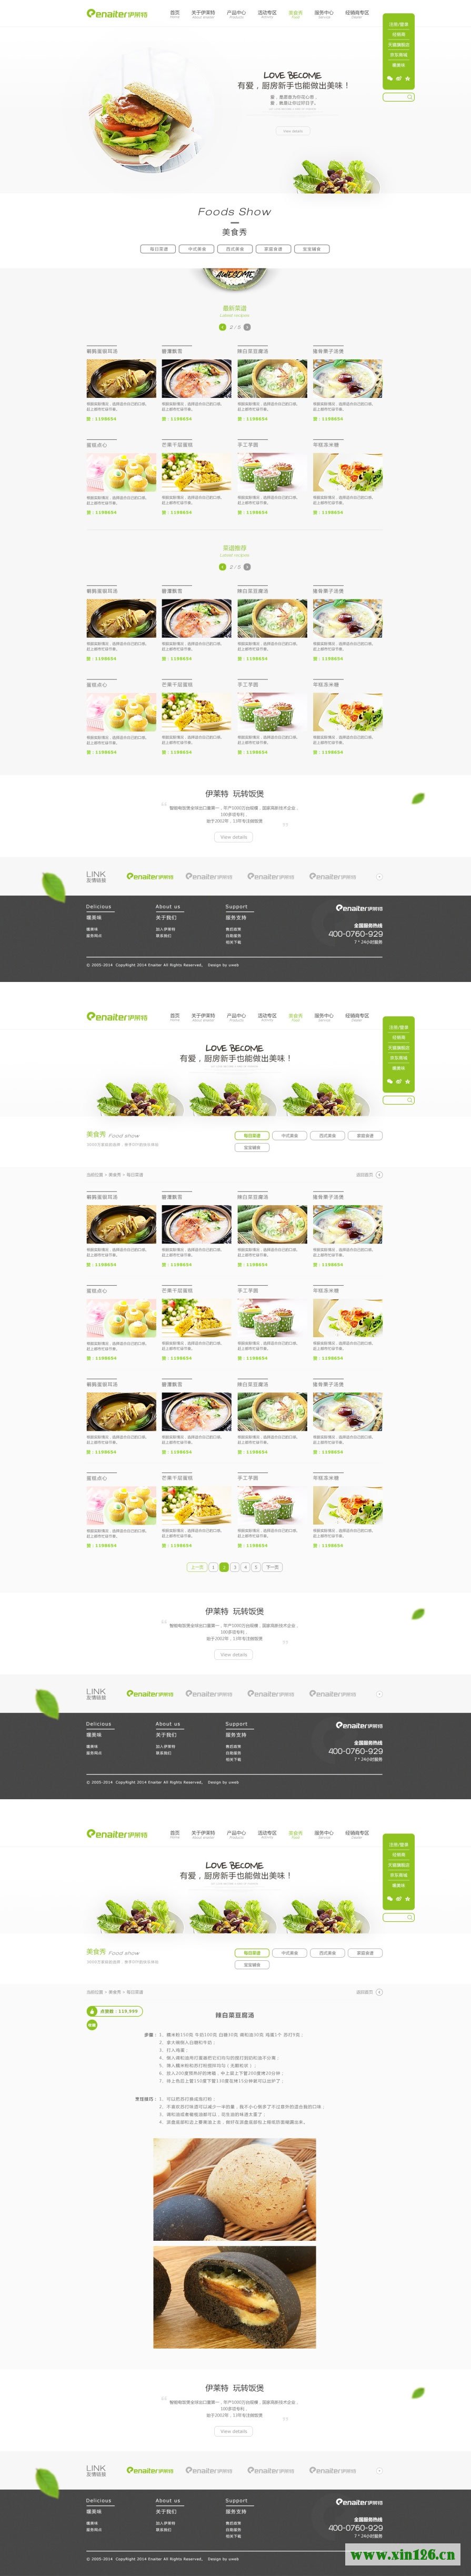 2套简约漂亮的绿色网站页面设计欣赏